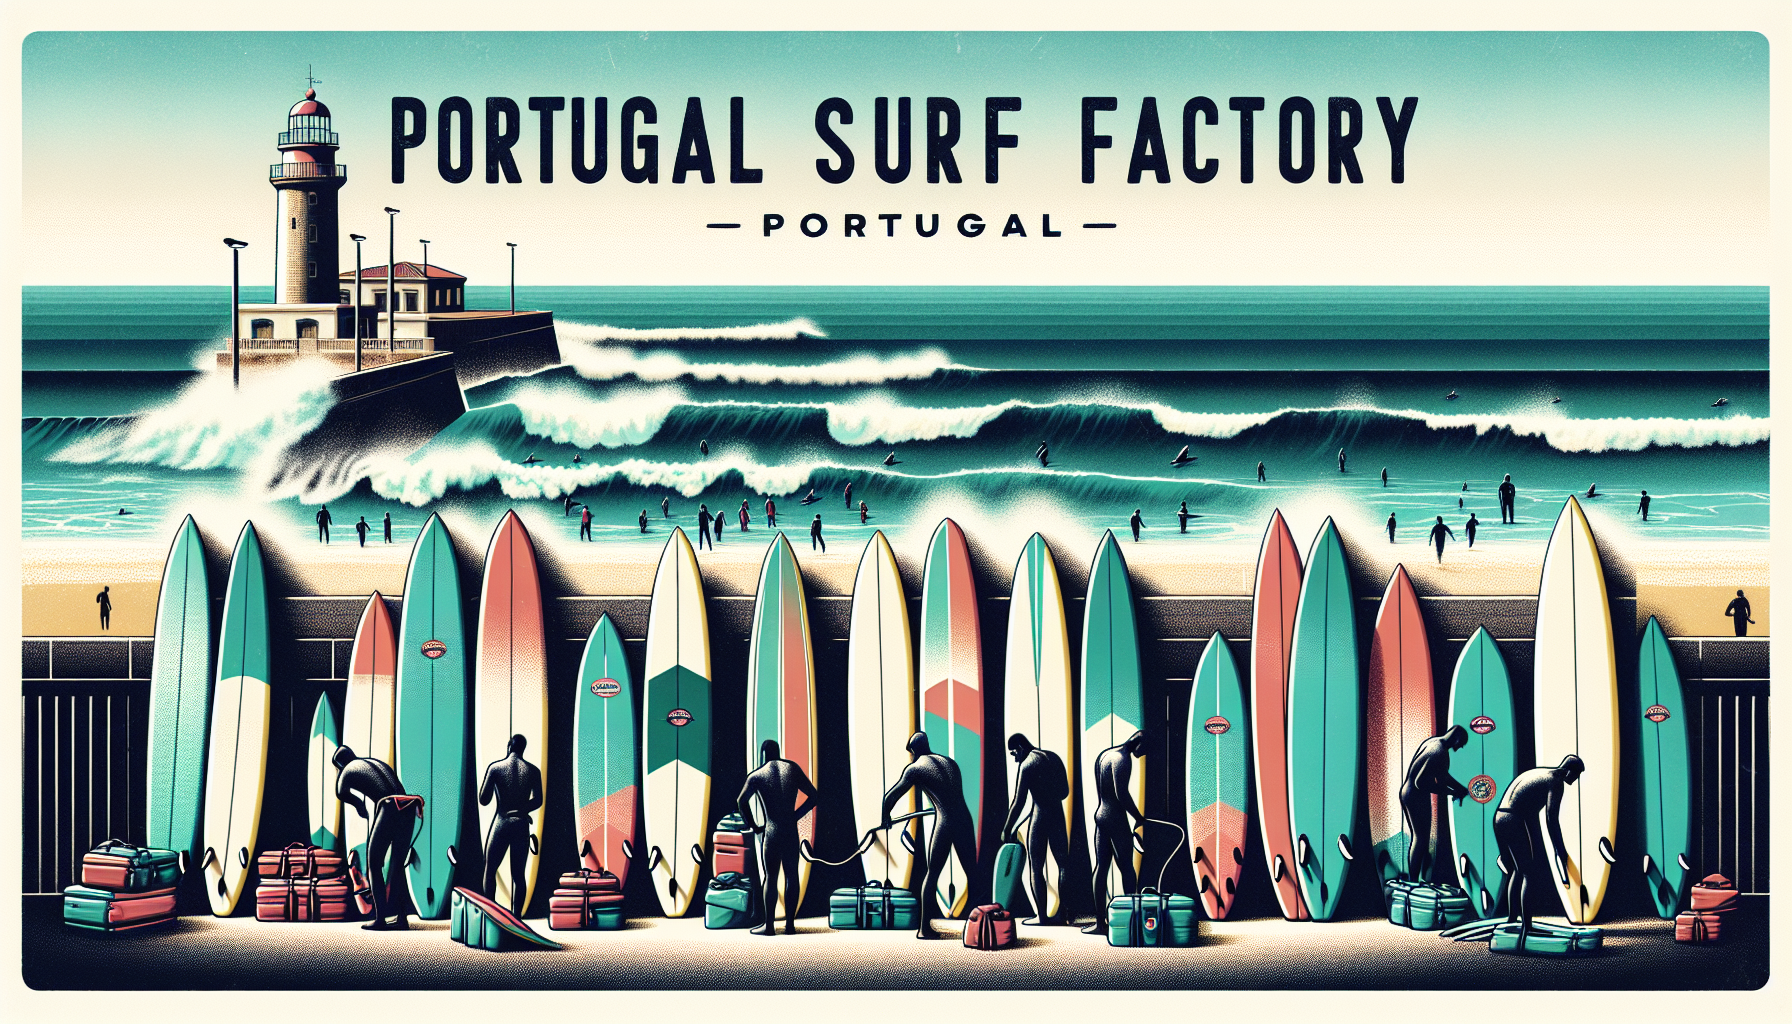 Portugal Surf Factory: Descubra as Melhores Pranchas Portuguesas